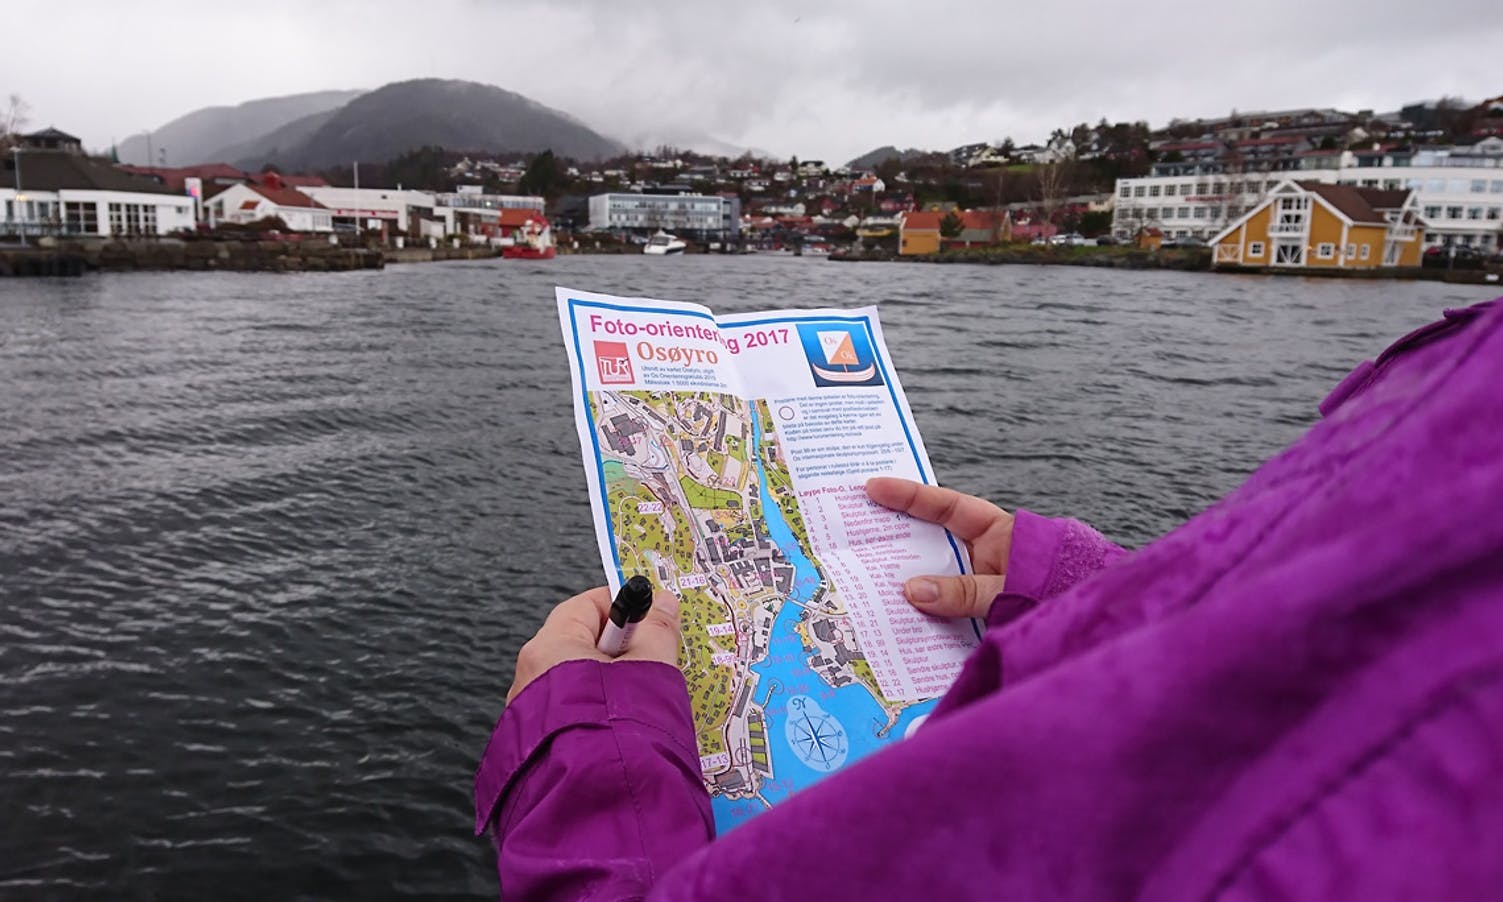 Foto-orientering på Øyro